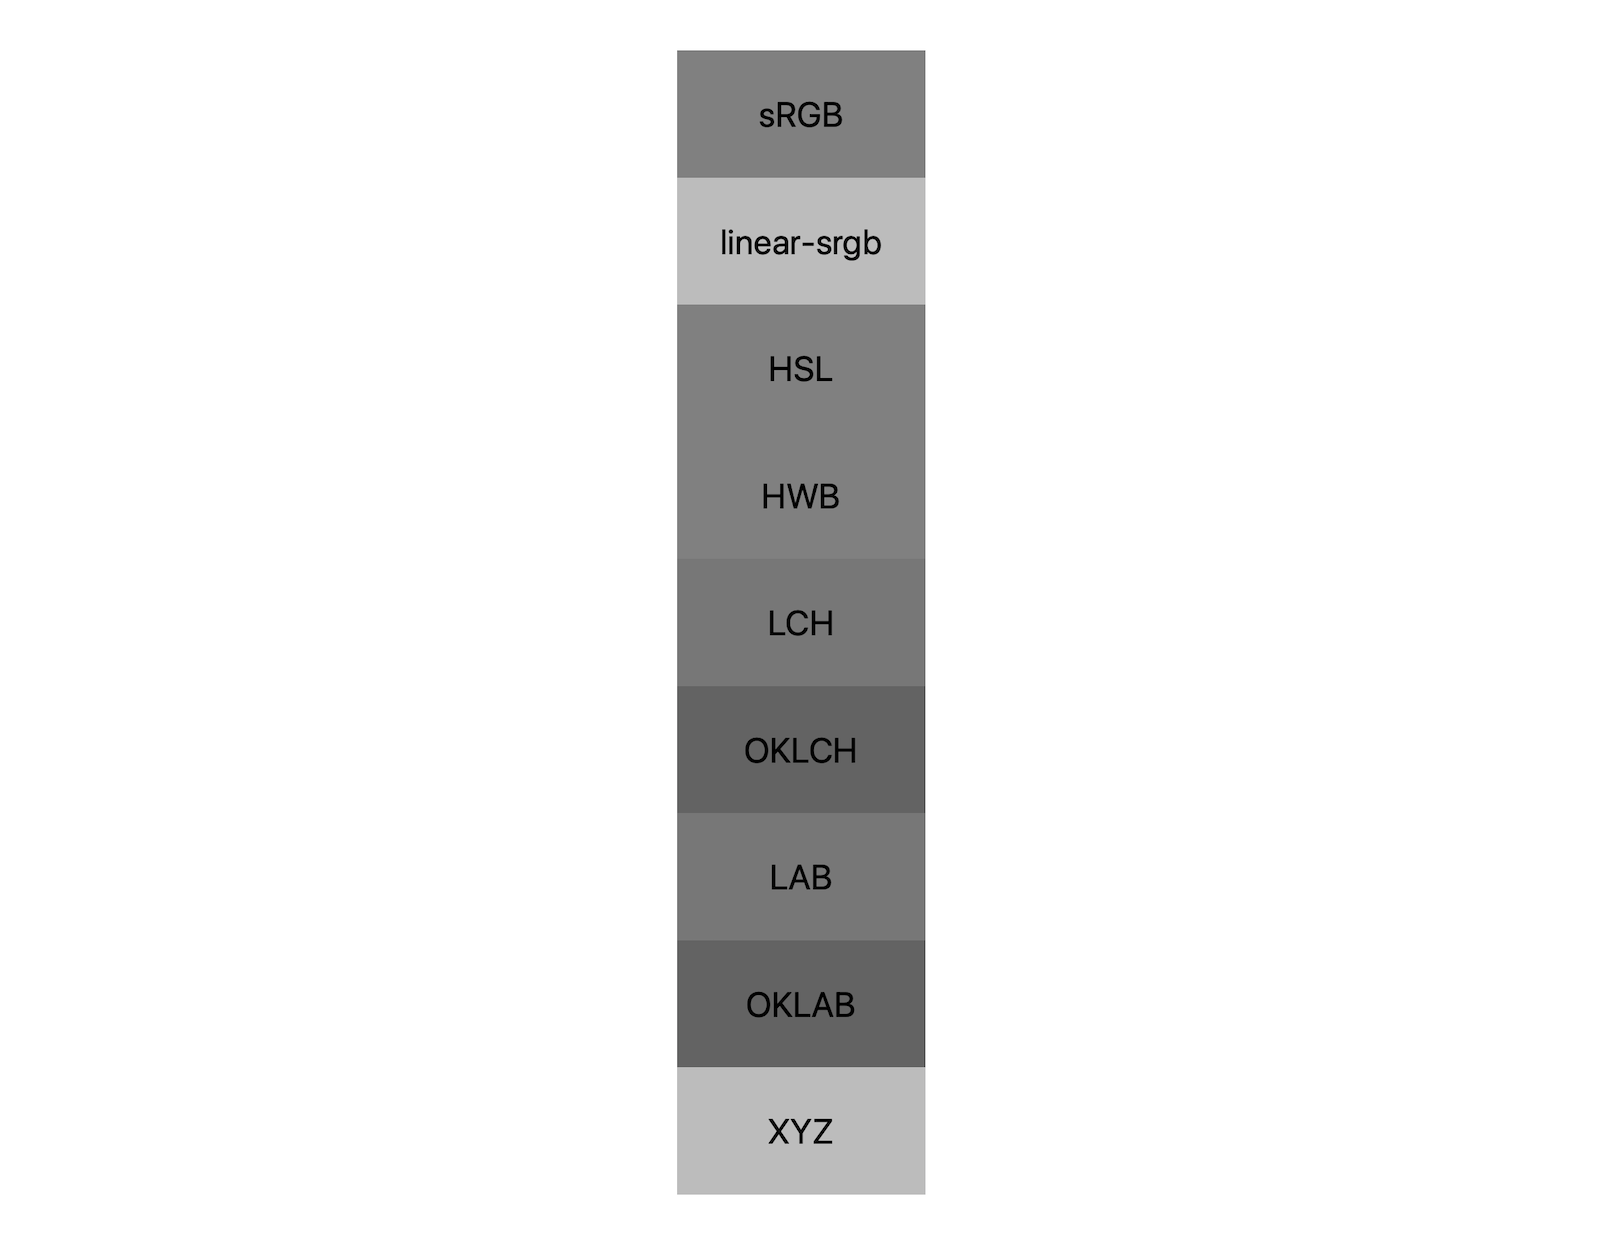 7 hệ màu (srgb, tuyến tính-srgb, lch, oklch, phòng thí nghiệm, oklab, xyz) cho thấy kết quả kết hợp giữa màu đen và trắng. Khoảng 5 sắc độ khác nhau được hiển thị, chứng minh rằng mỗi hệ màu thậm chí sẽ trộn thành một màu xám khác nhau.